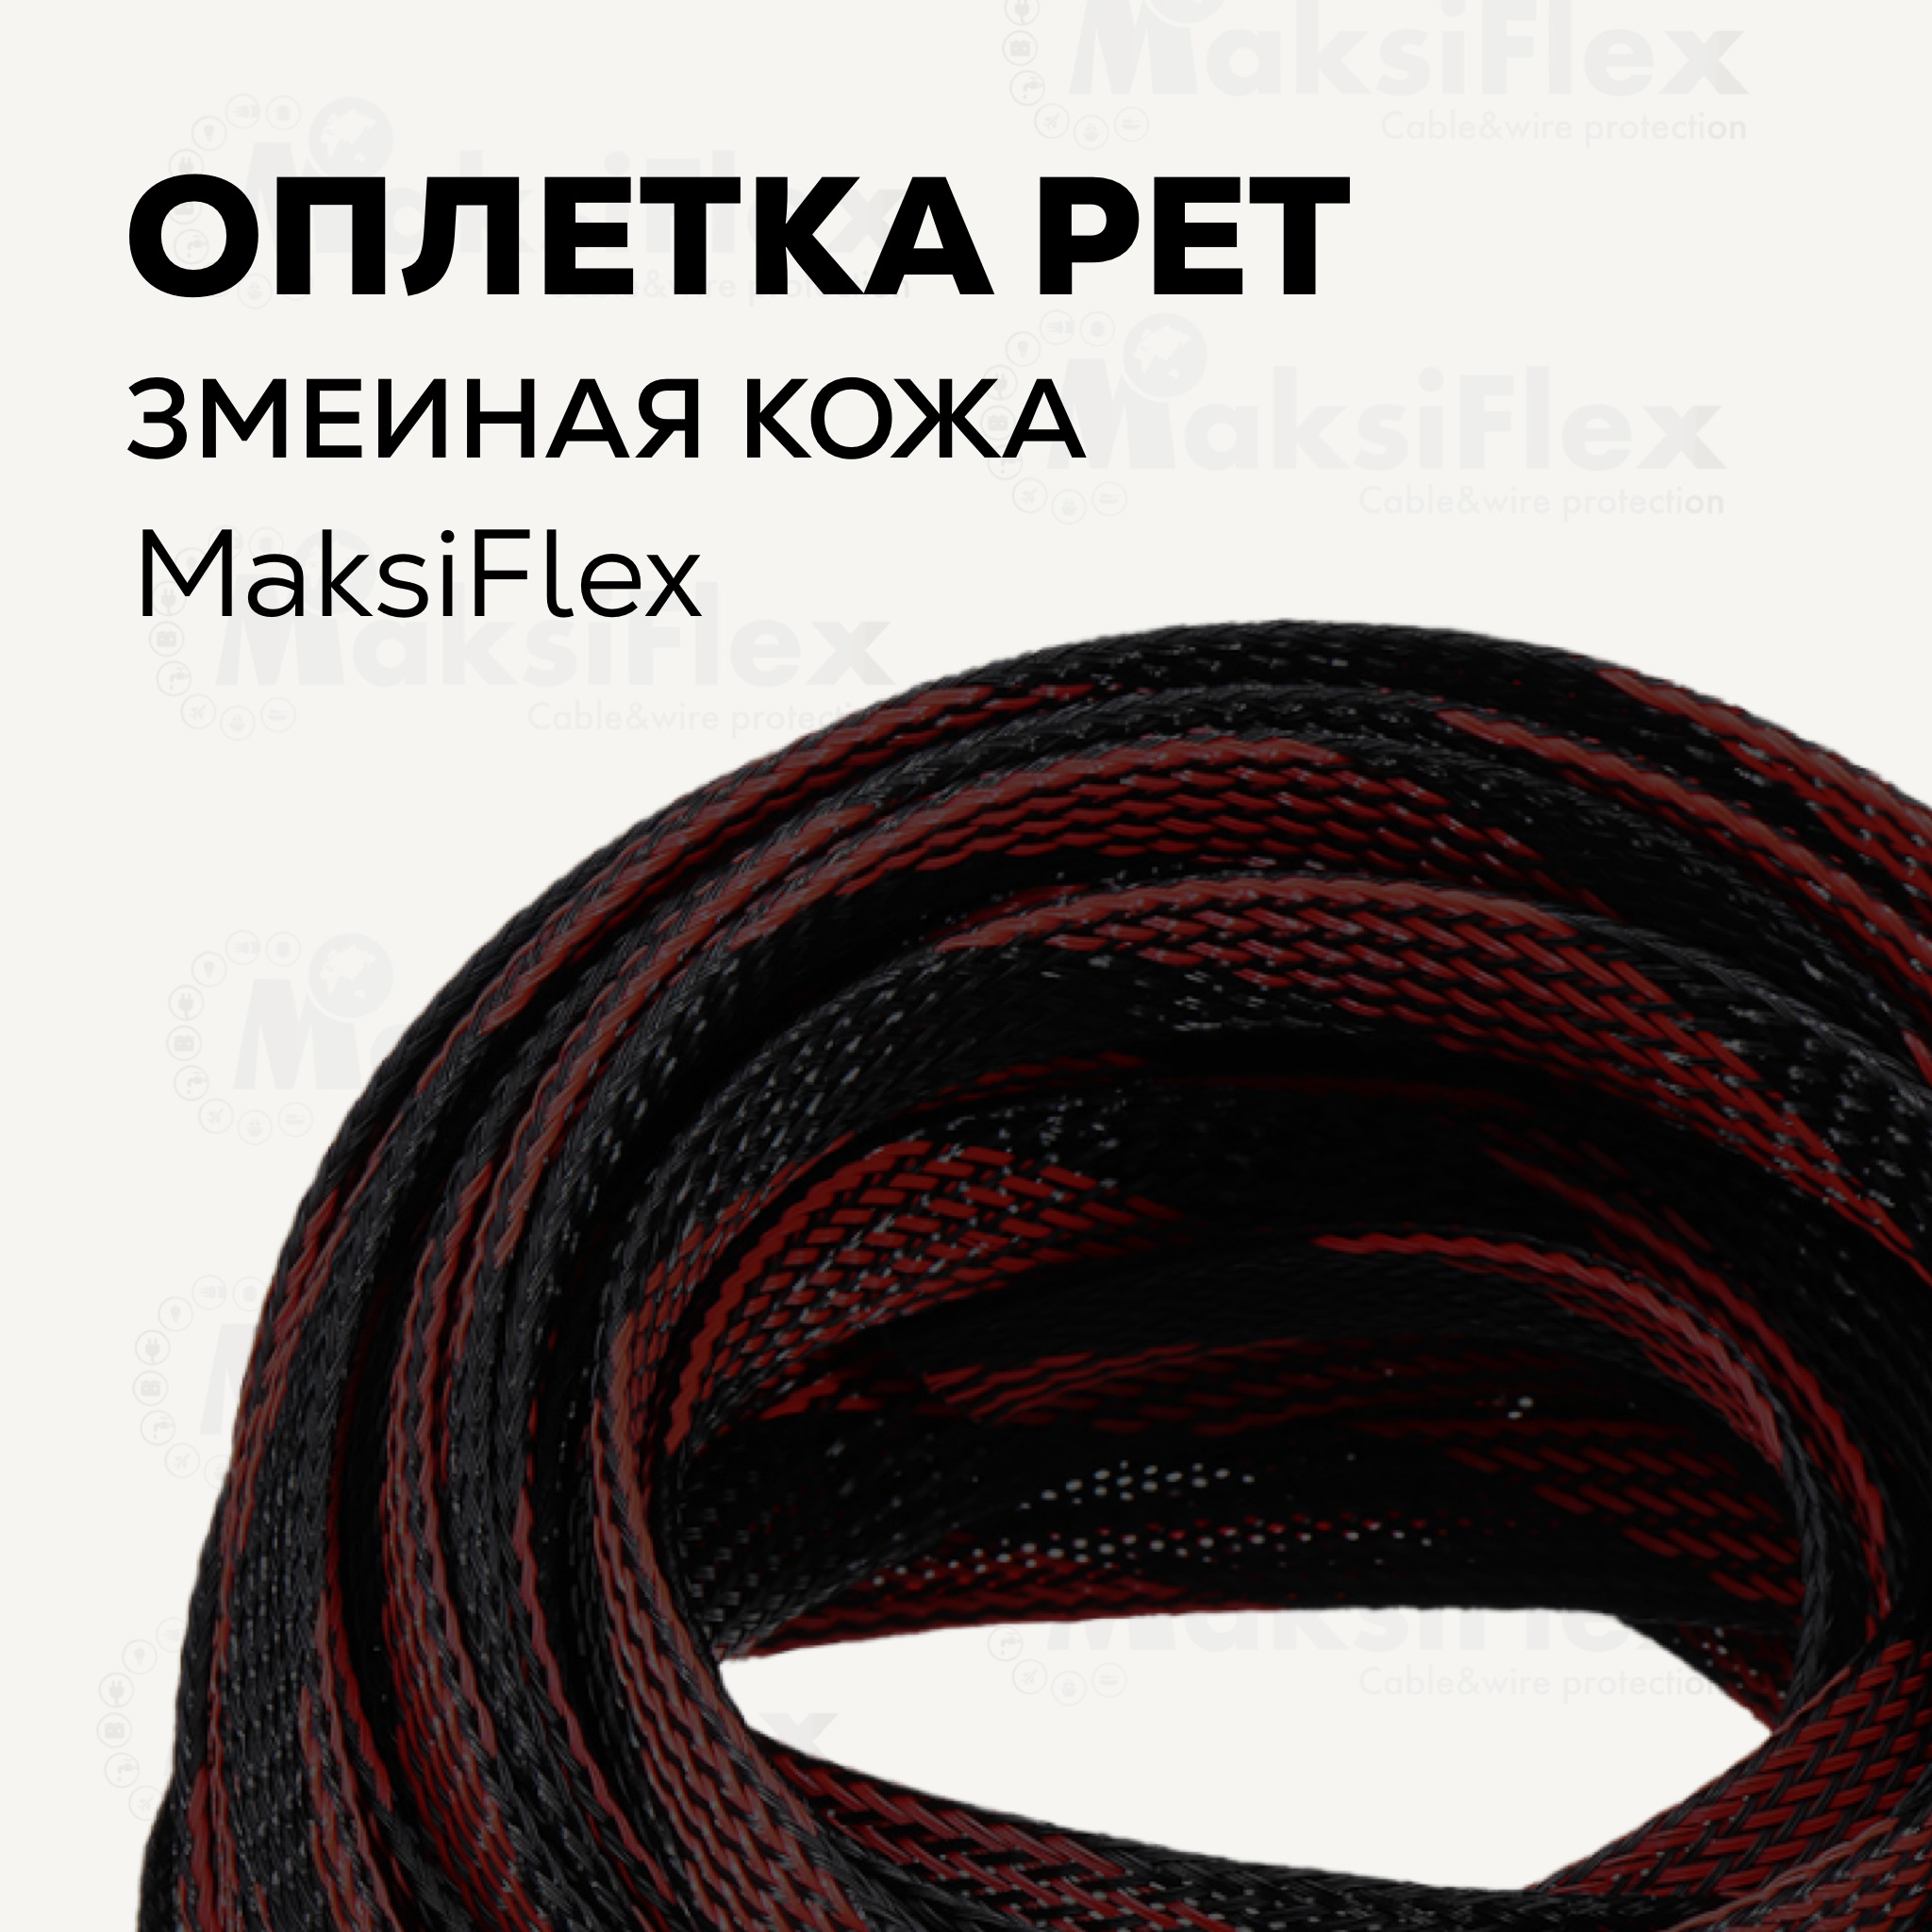 ОплеткакабельнаяизполиэстеразмеинаякожаMaksiFlex10,8-20мм,черно-красная,10м